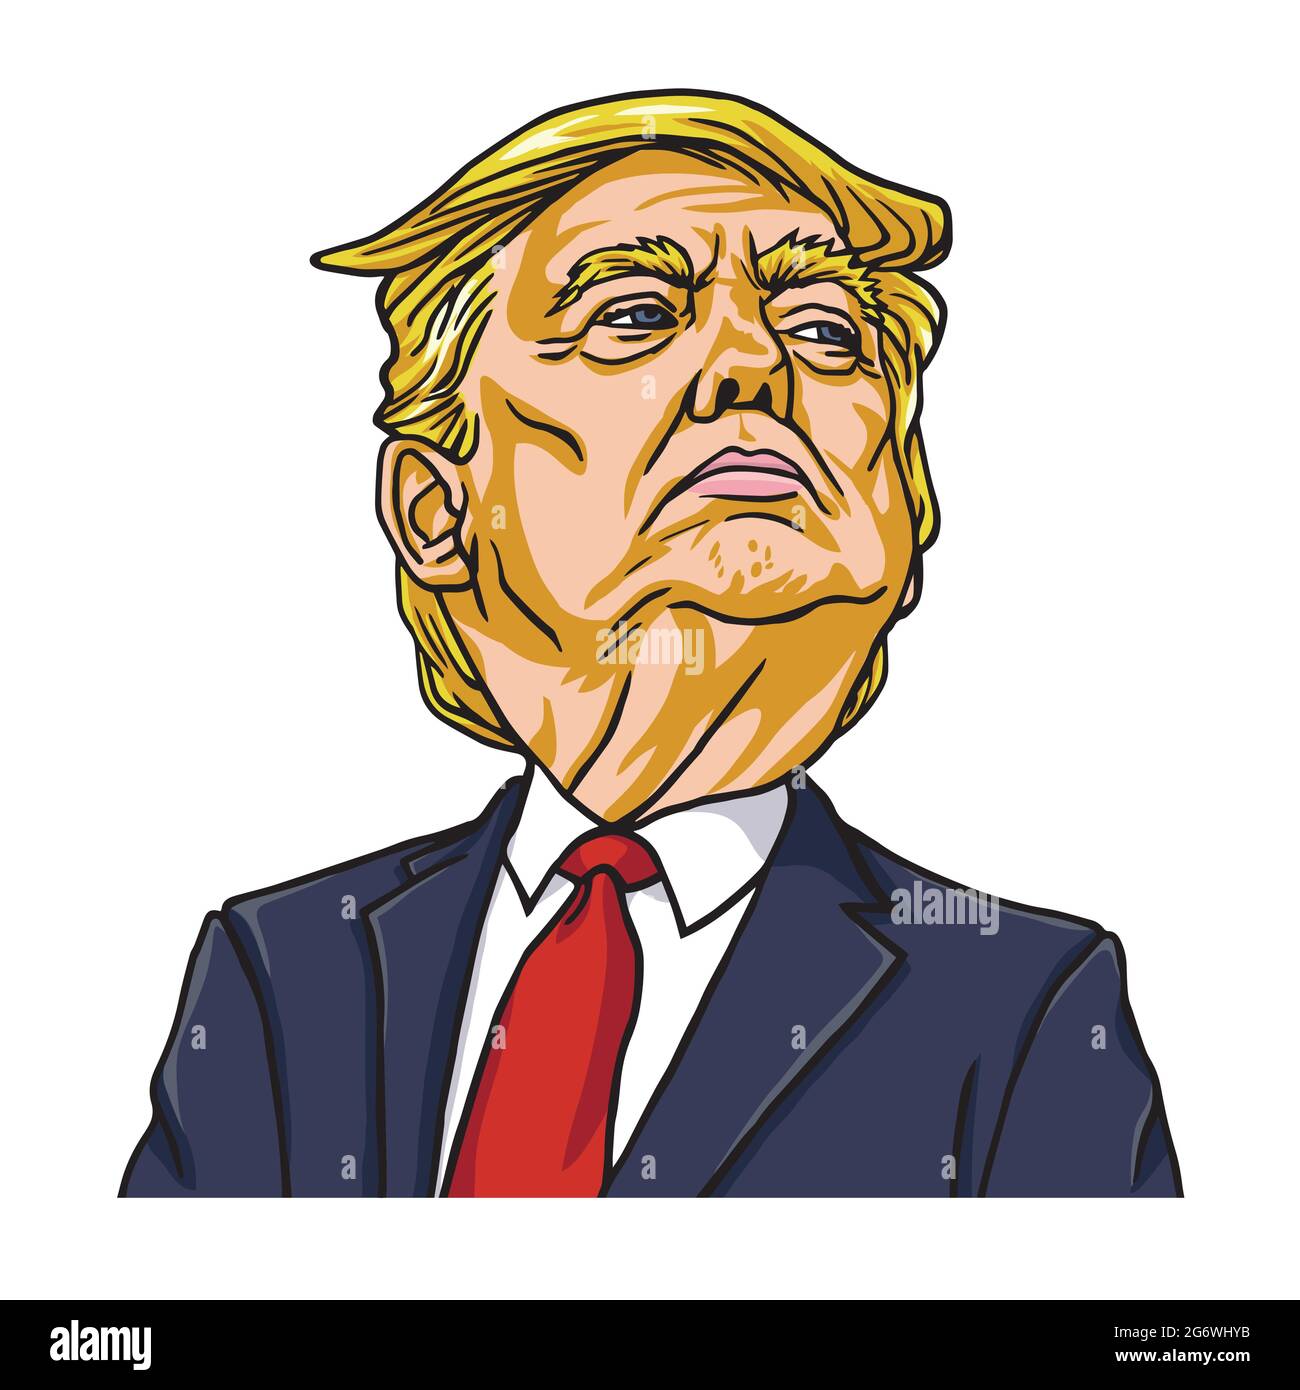 Donald Trump le président des États-Unis d'Amérique. Vecteur de dessin animé. Washington, le 19 mai 2018 Illustration de Vecteur